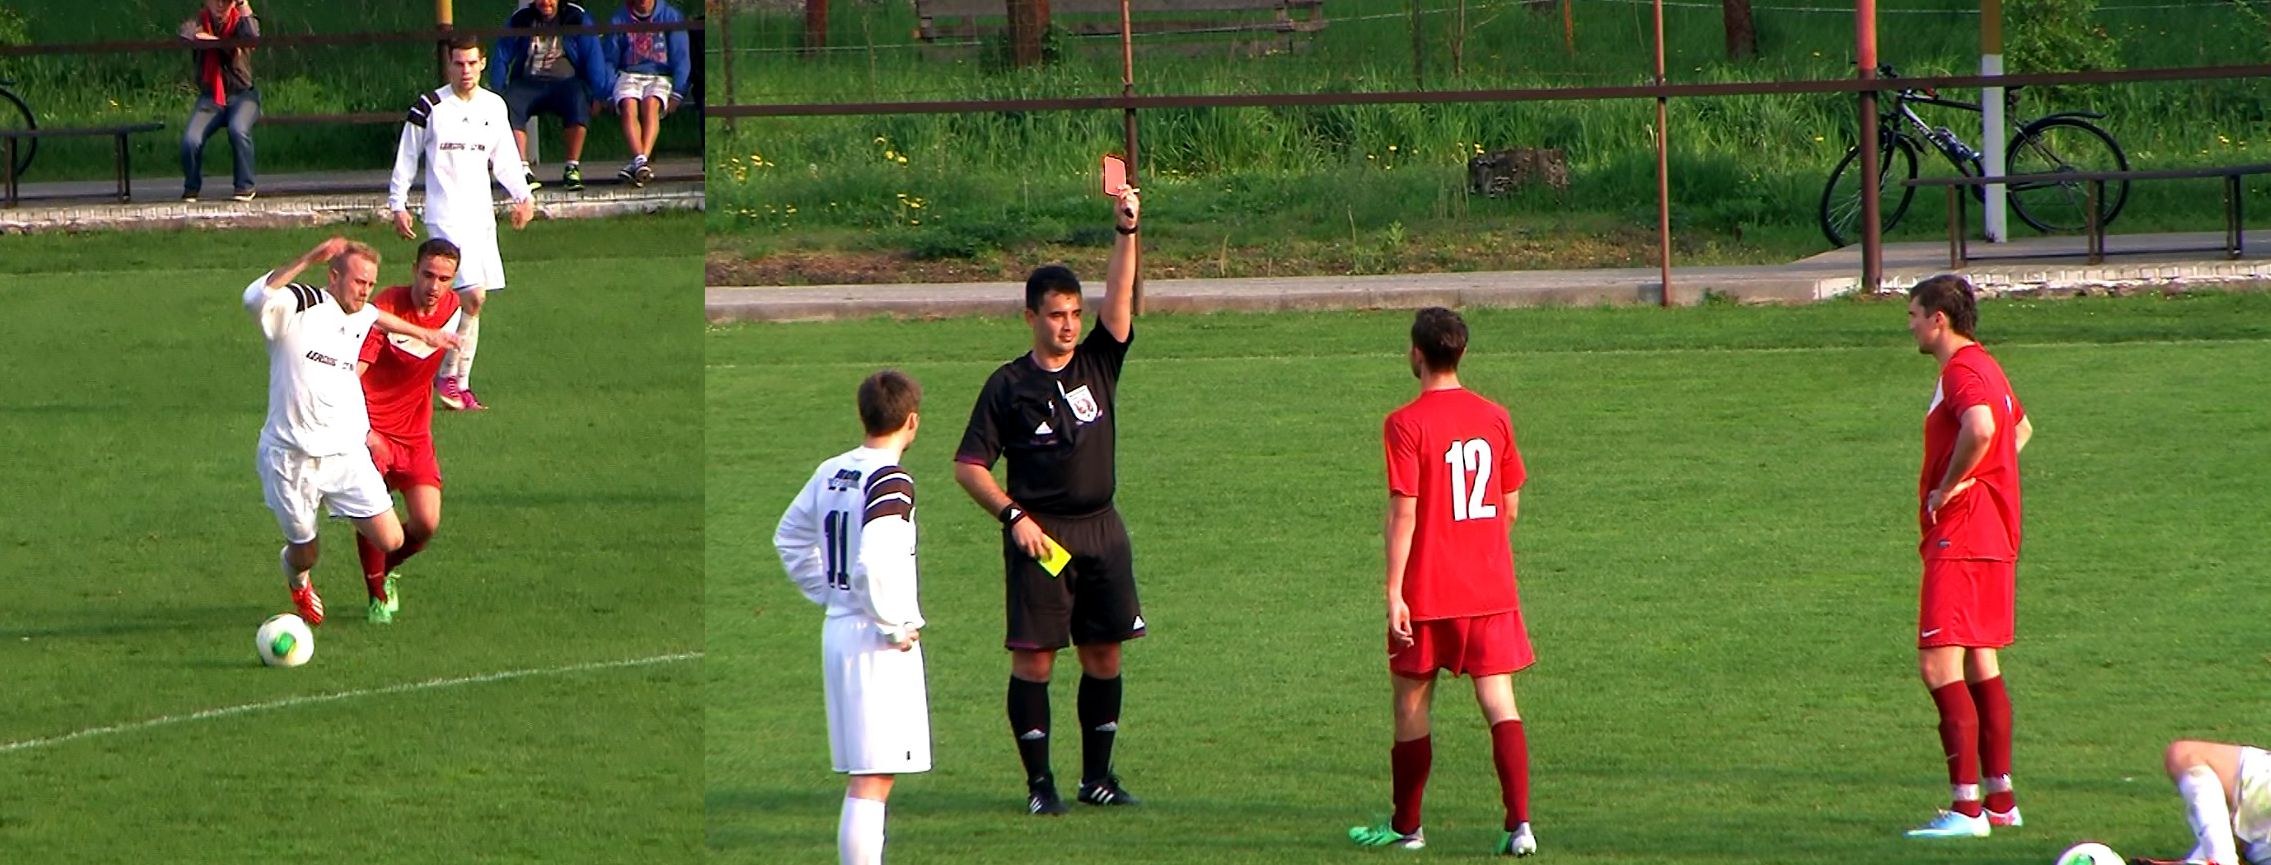 FK Jaroměř - FK Lázně Bělohrad 26.4.2014, foto z videa: Václav Mlejnek